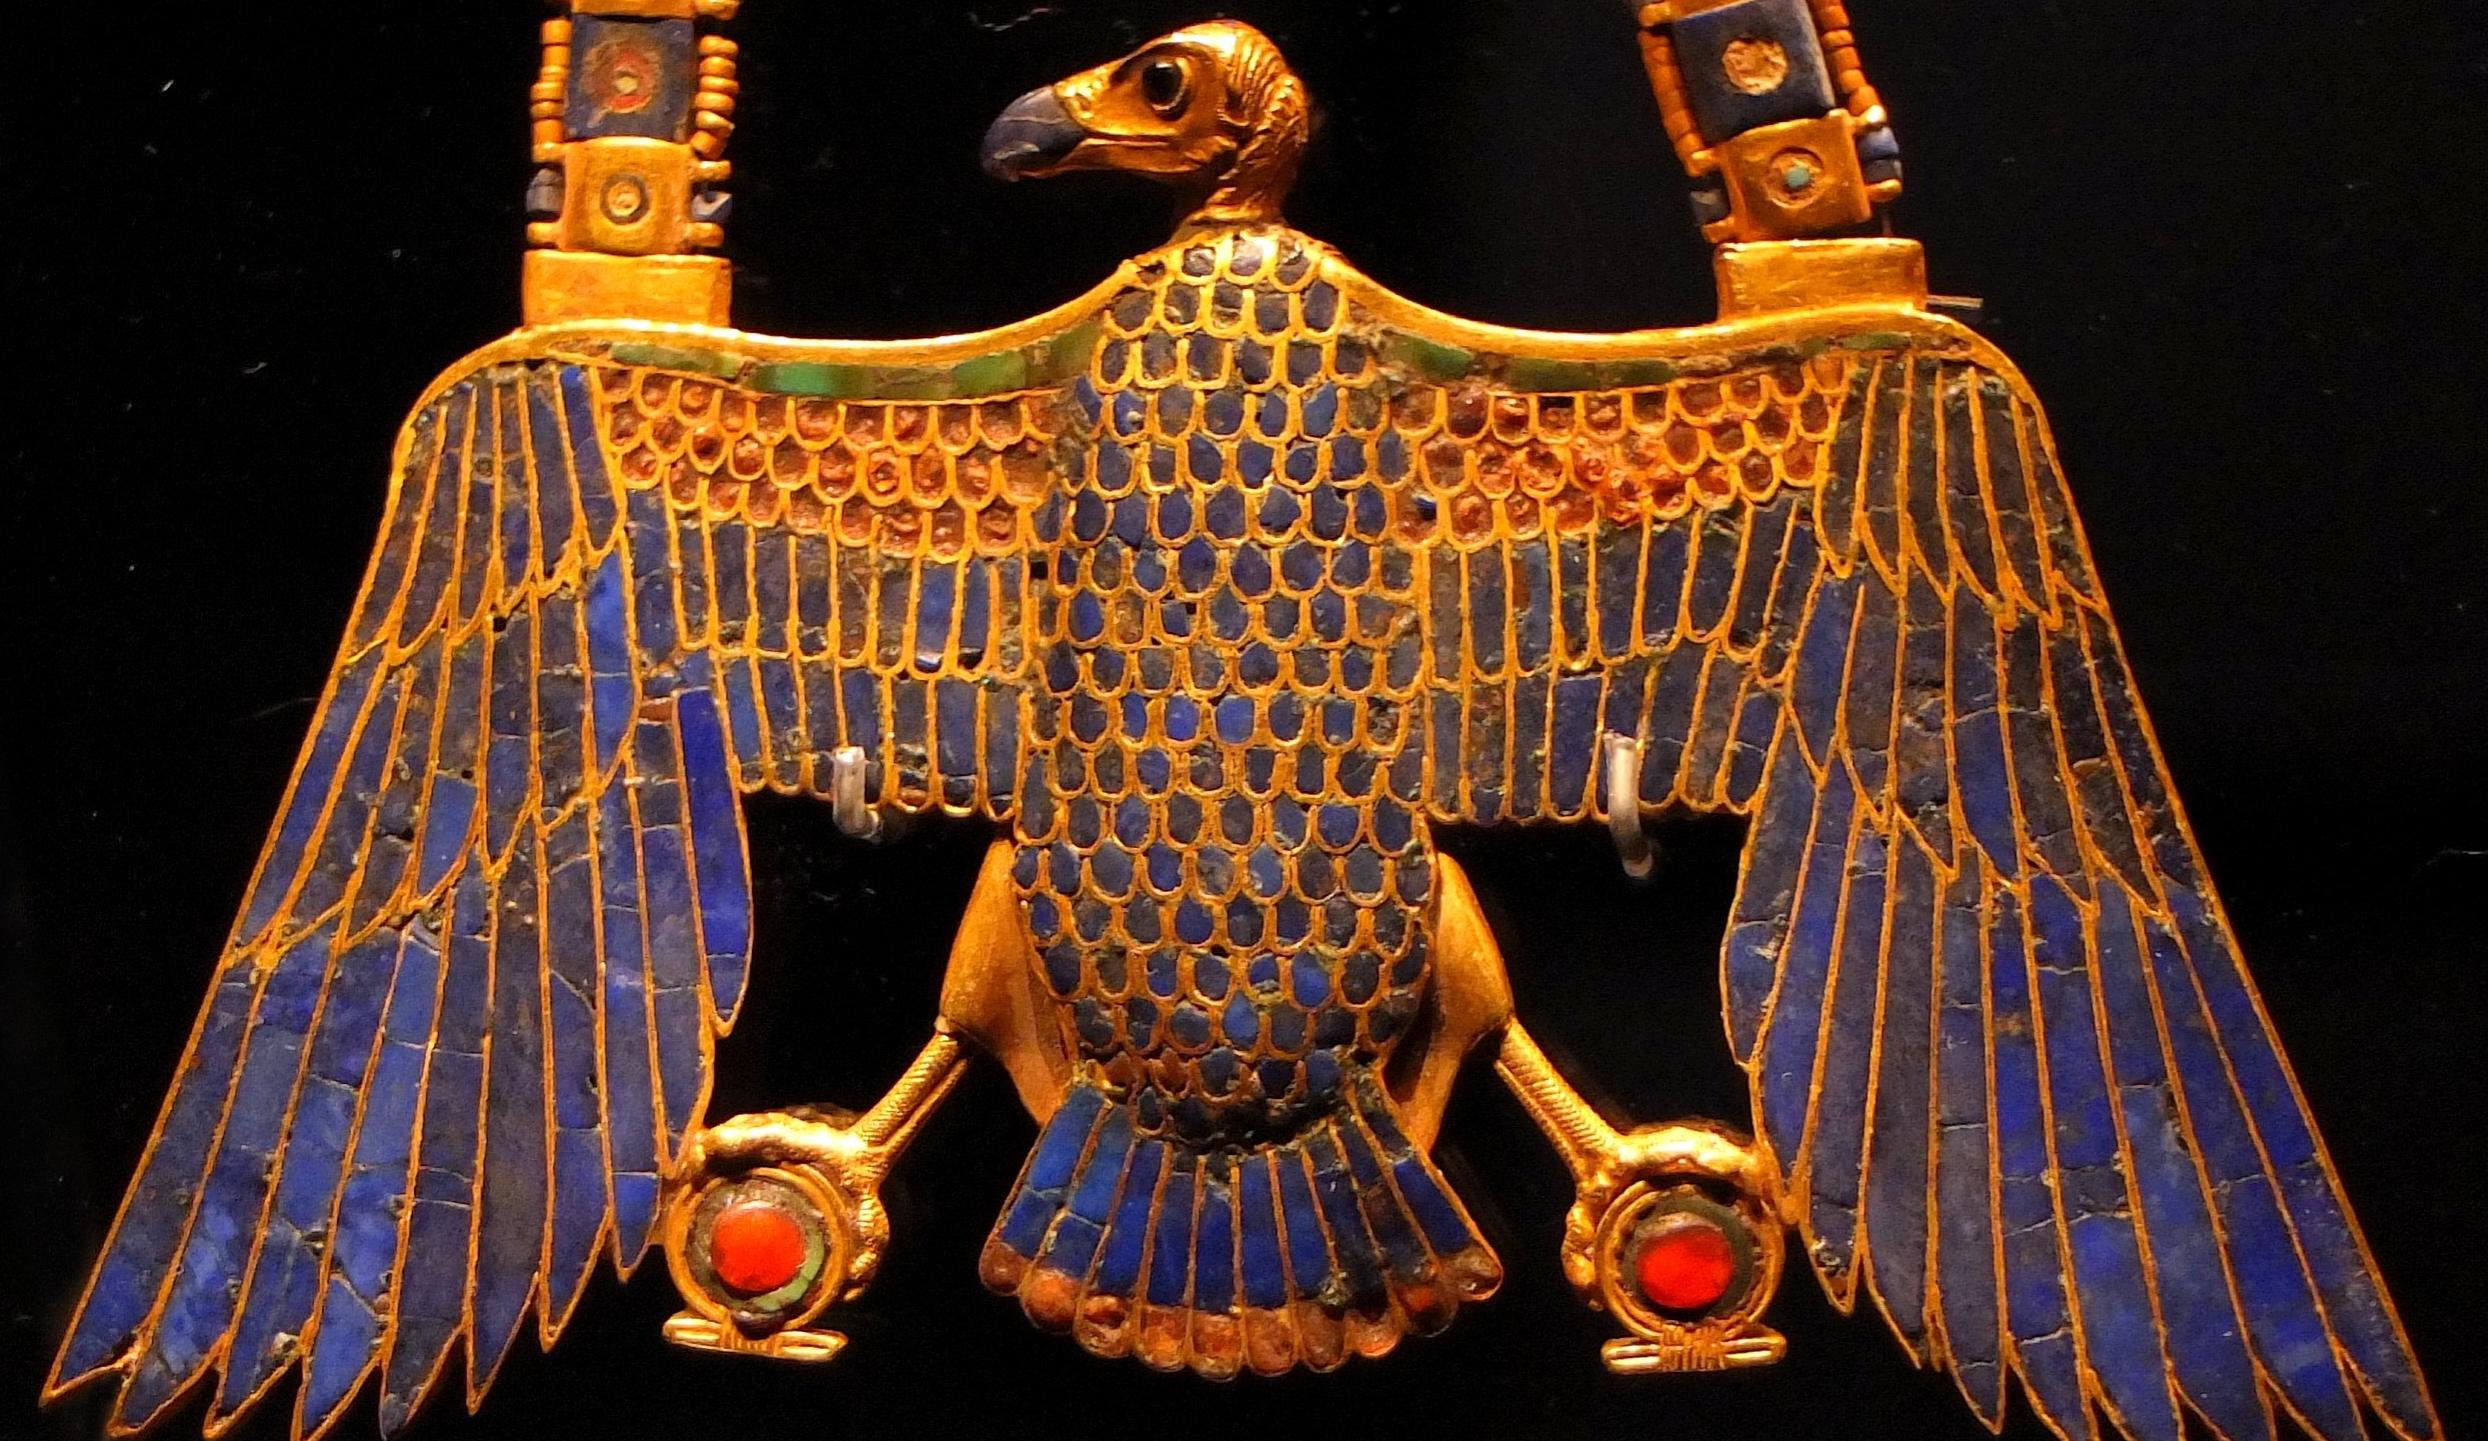 تاریخچه جواهرات ثابت می کند که مد طلا و جواهر می تواند هنر باشد و باید در نظر گرفته شود6